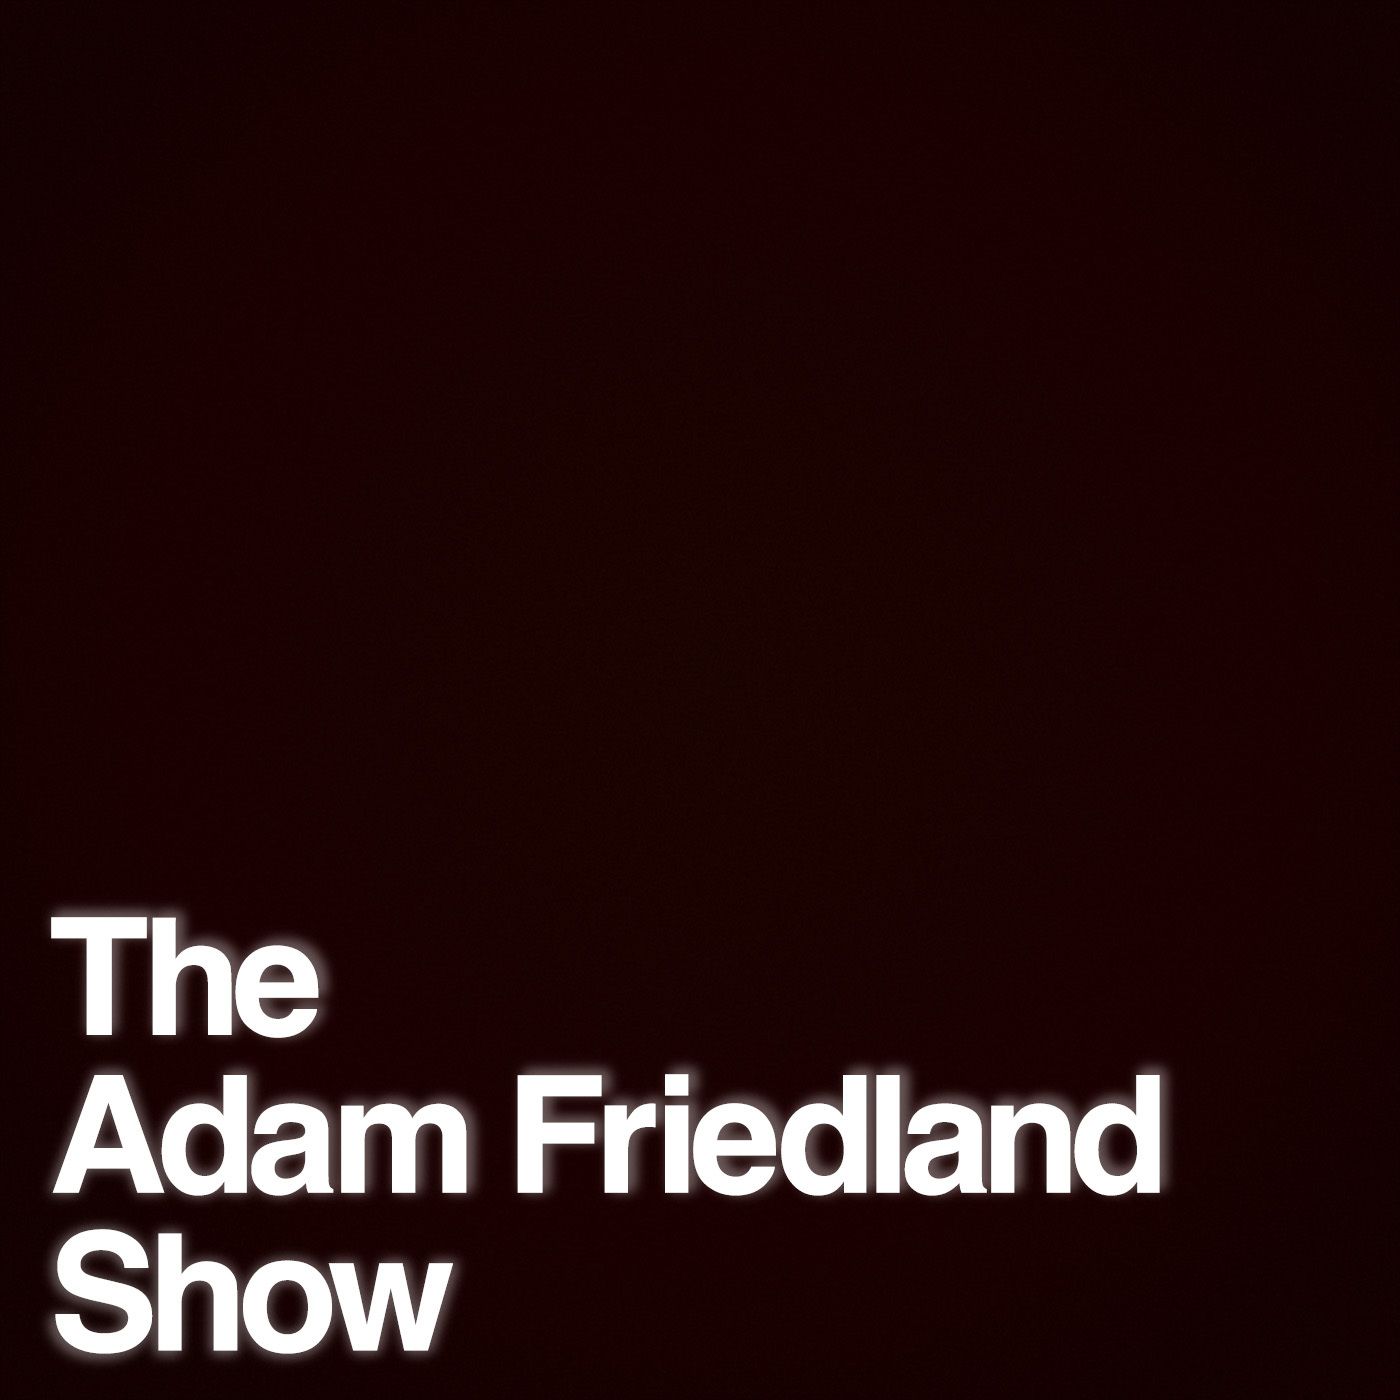 The Adam Friedland Show Podcast – Episode 13